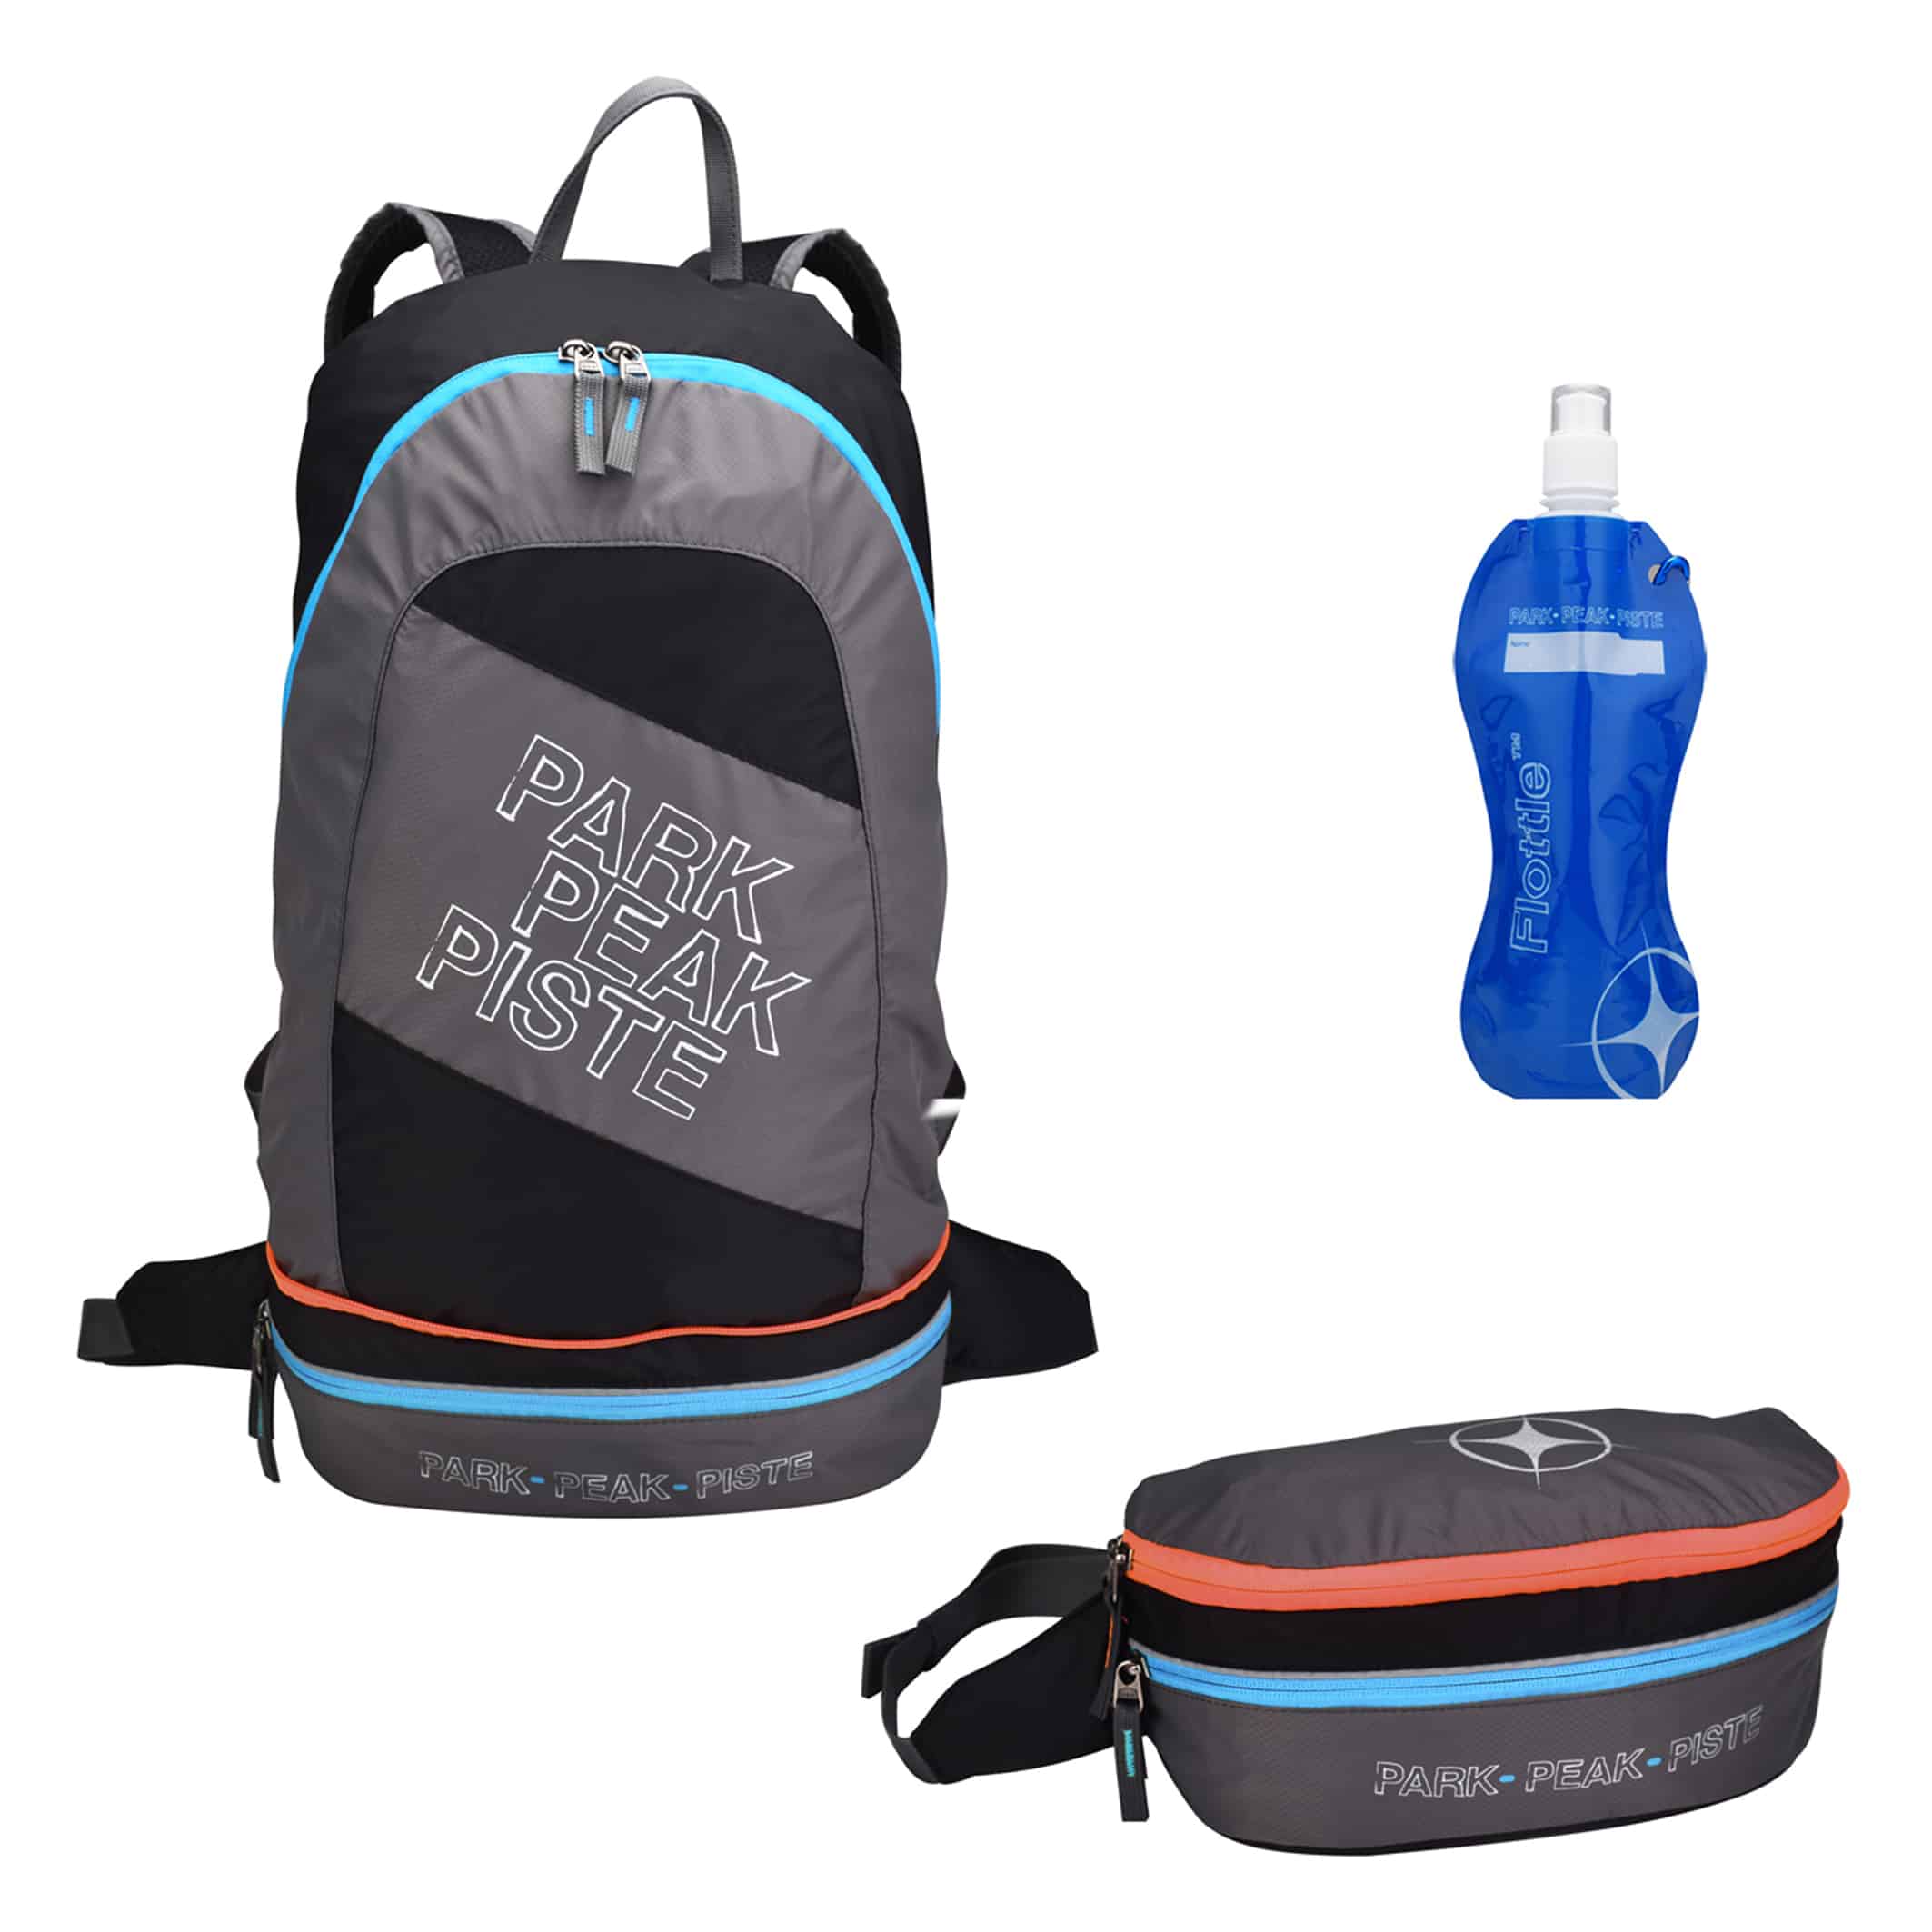 MB550-03-Backpack-2-in-1-Rock-Blue-Orange+Flottle